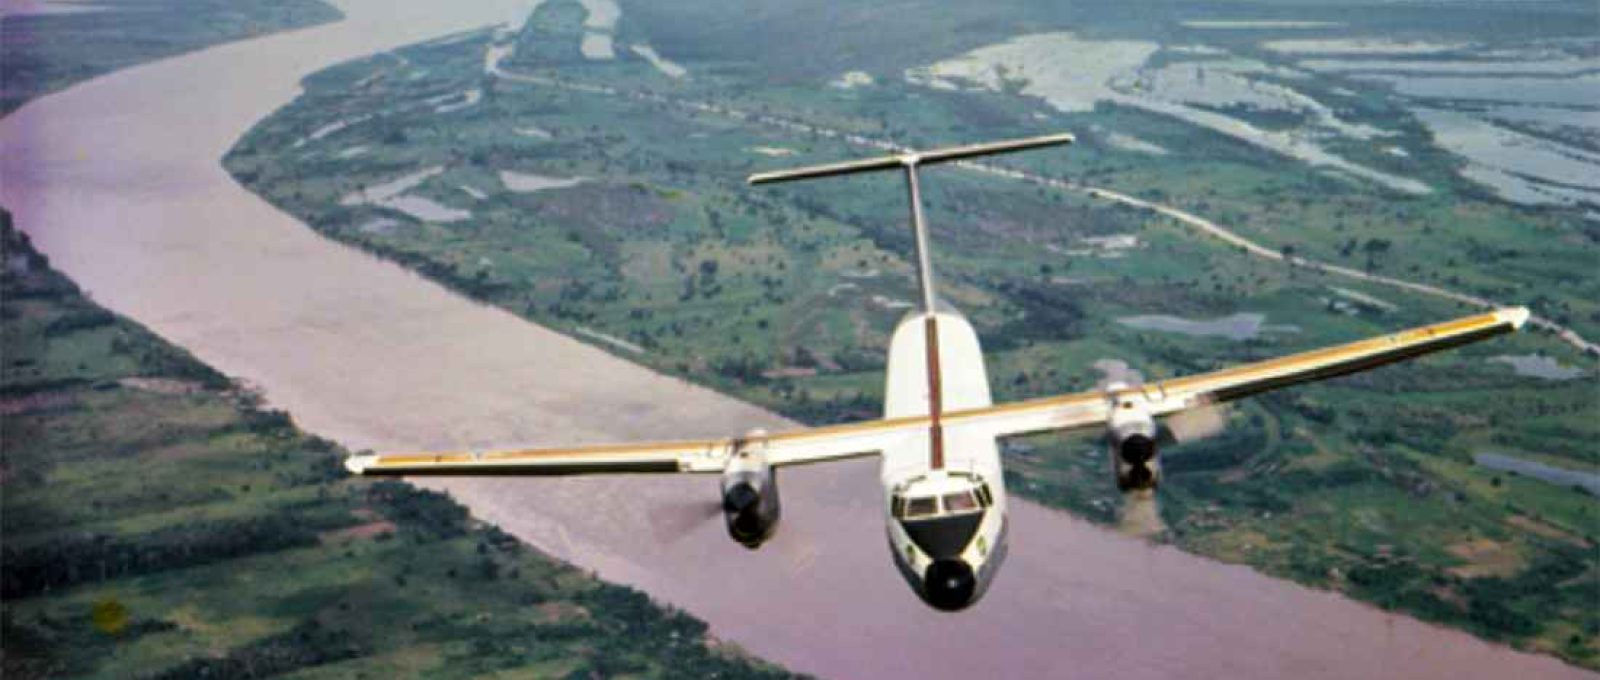 Um C-115 Búfalo da FAB sobrevoa a Amazônia (Força Aérea Brasileira).